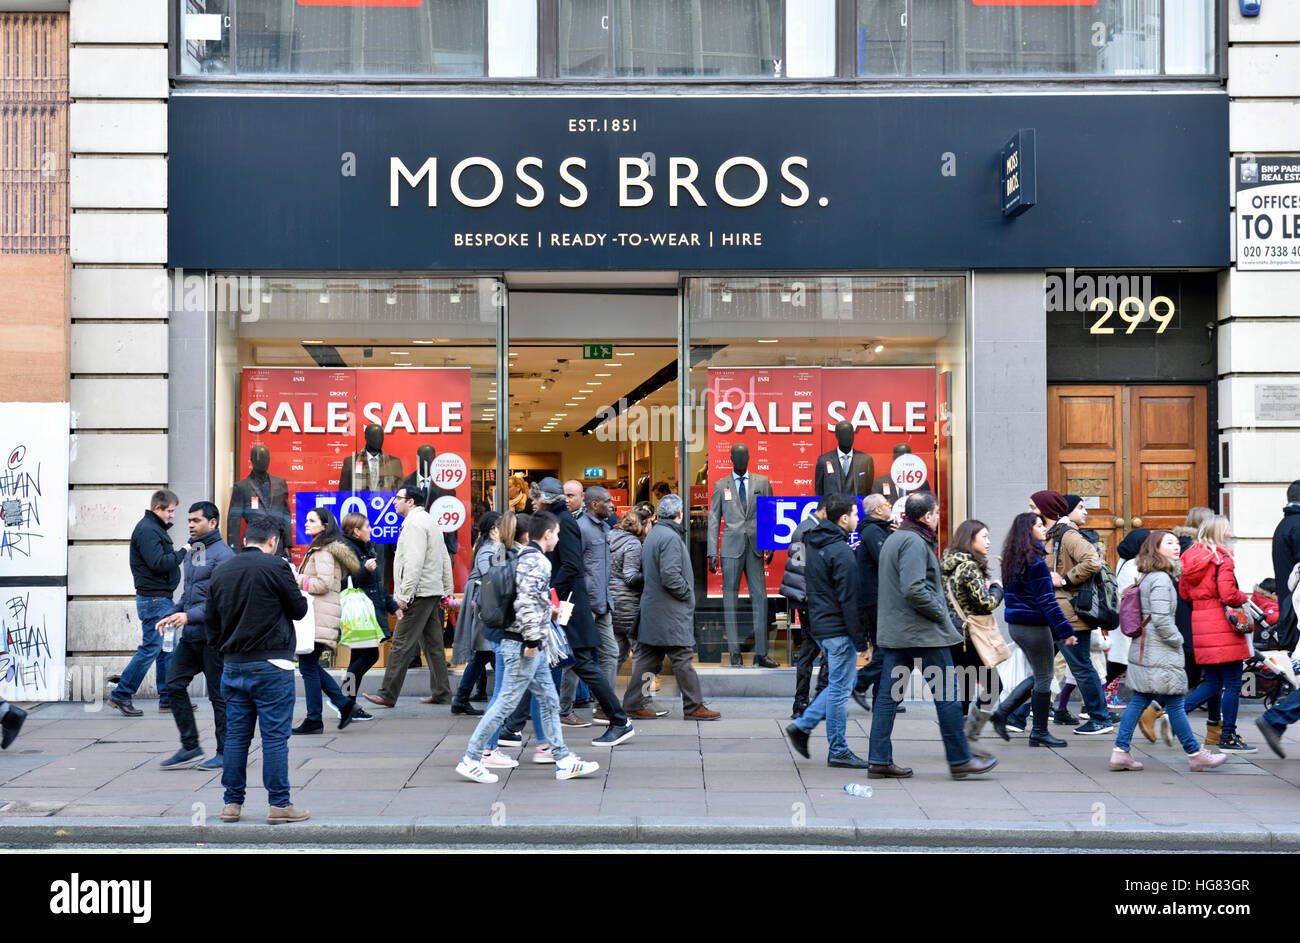 Moss Bros vente avec les personnes de passage, Oxford Street, Londres, Angleterre, Grande-Bretagne, Royaume-Uni Banque D'Images